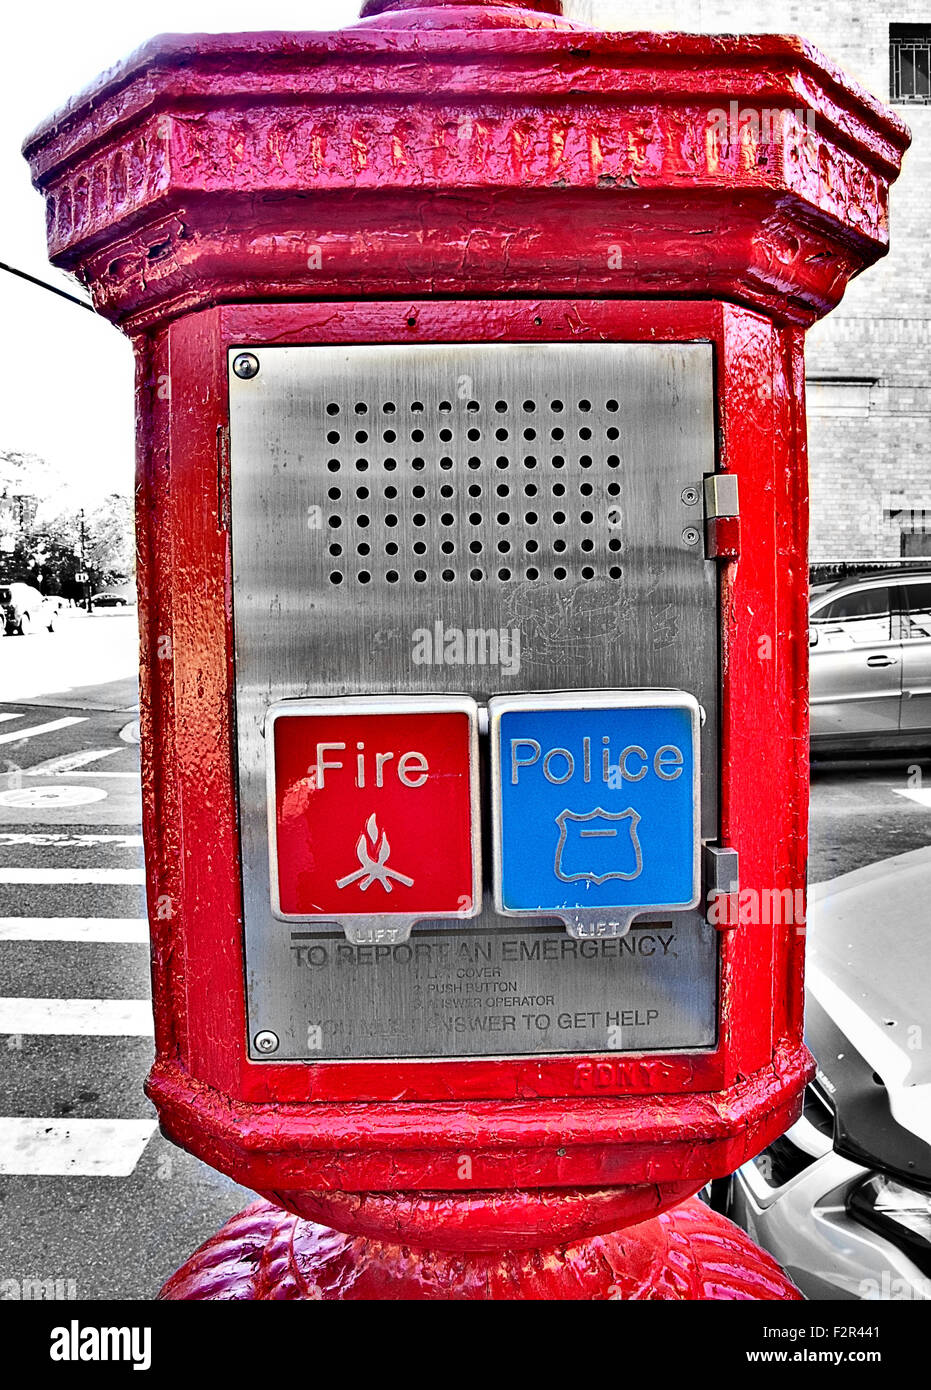 Öffentliche emergency Call Box Telefon mit roten Feuerwehr und blauen Polizei Ruftasten. Stockfoto